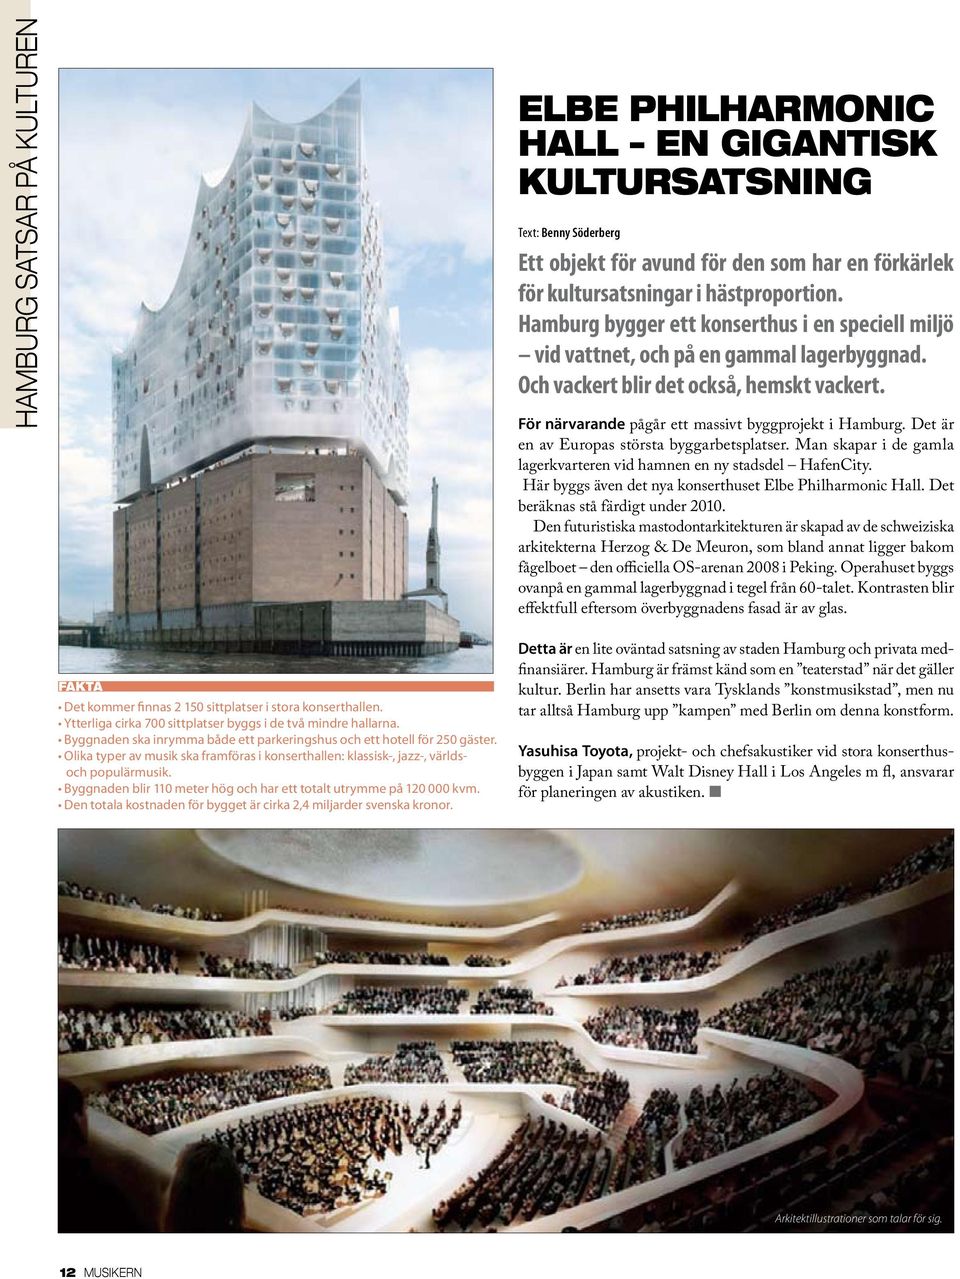 Det är en av Europas största byggarbetsplatser. Man skapar i de gamla lagerkvarteren vid hamnen en ny stadsdel HafenCity. Här byggs även det nya konserthuset Elbe Philharmonic Hall.